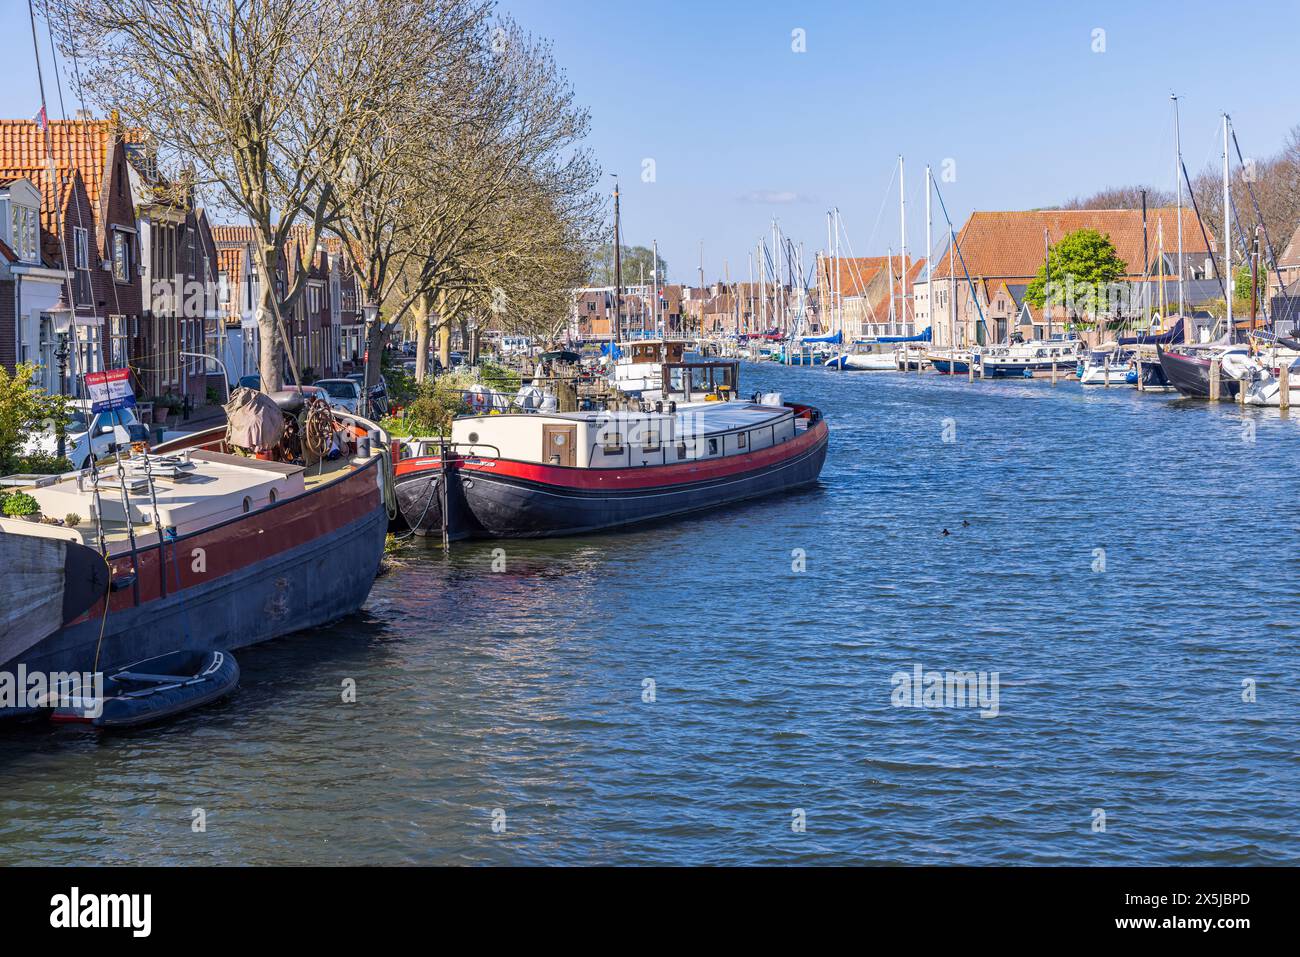 Niederlande, Nordholland, Enkhuizen. Traditionelle Kanalboote und andere Wasserfahrzeuge auf einem niederländischen Kanal. Stockfoto